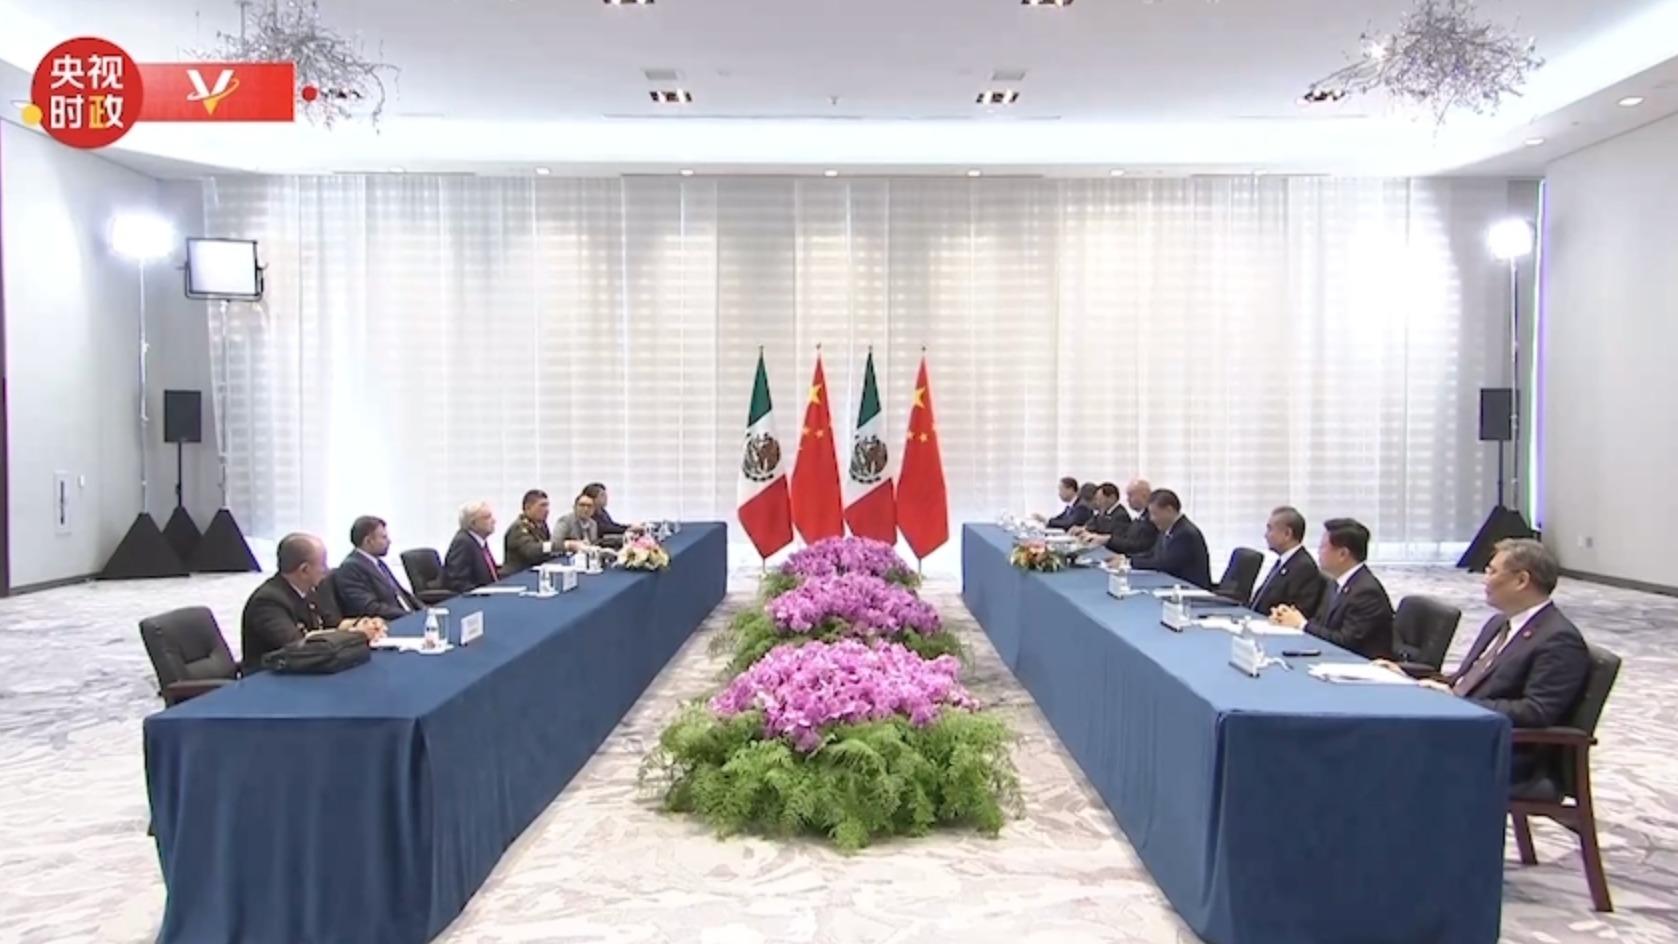 चीनका राष्ट्राध्यक्ष सी चिनफिङद्वारा मेक्सिकोका राष्ट्रपतिसँग भेटवार्ता